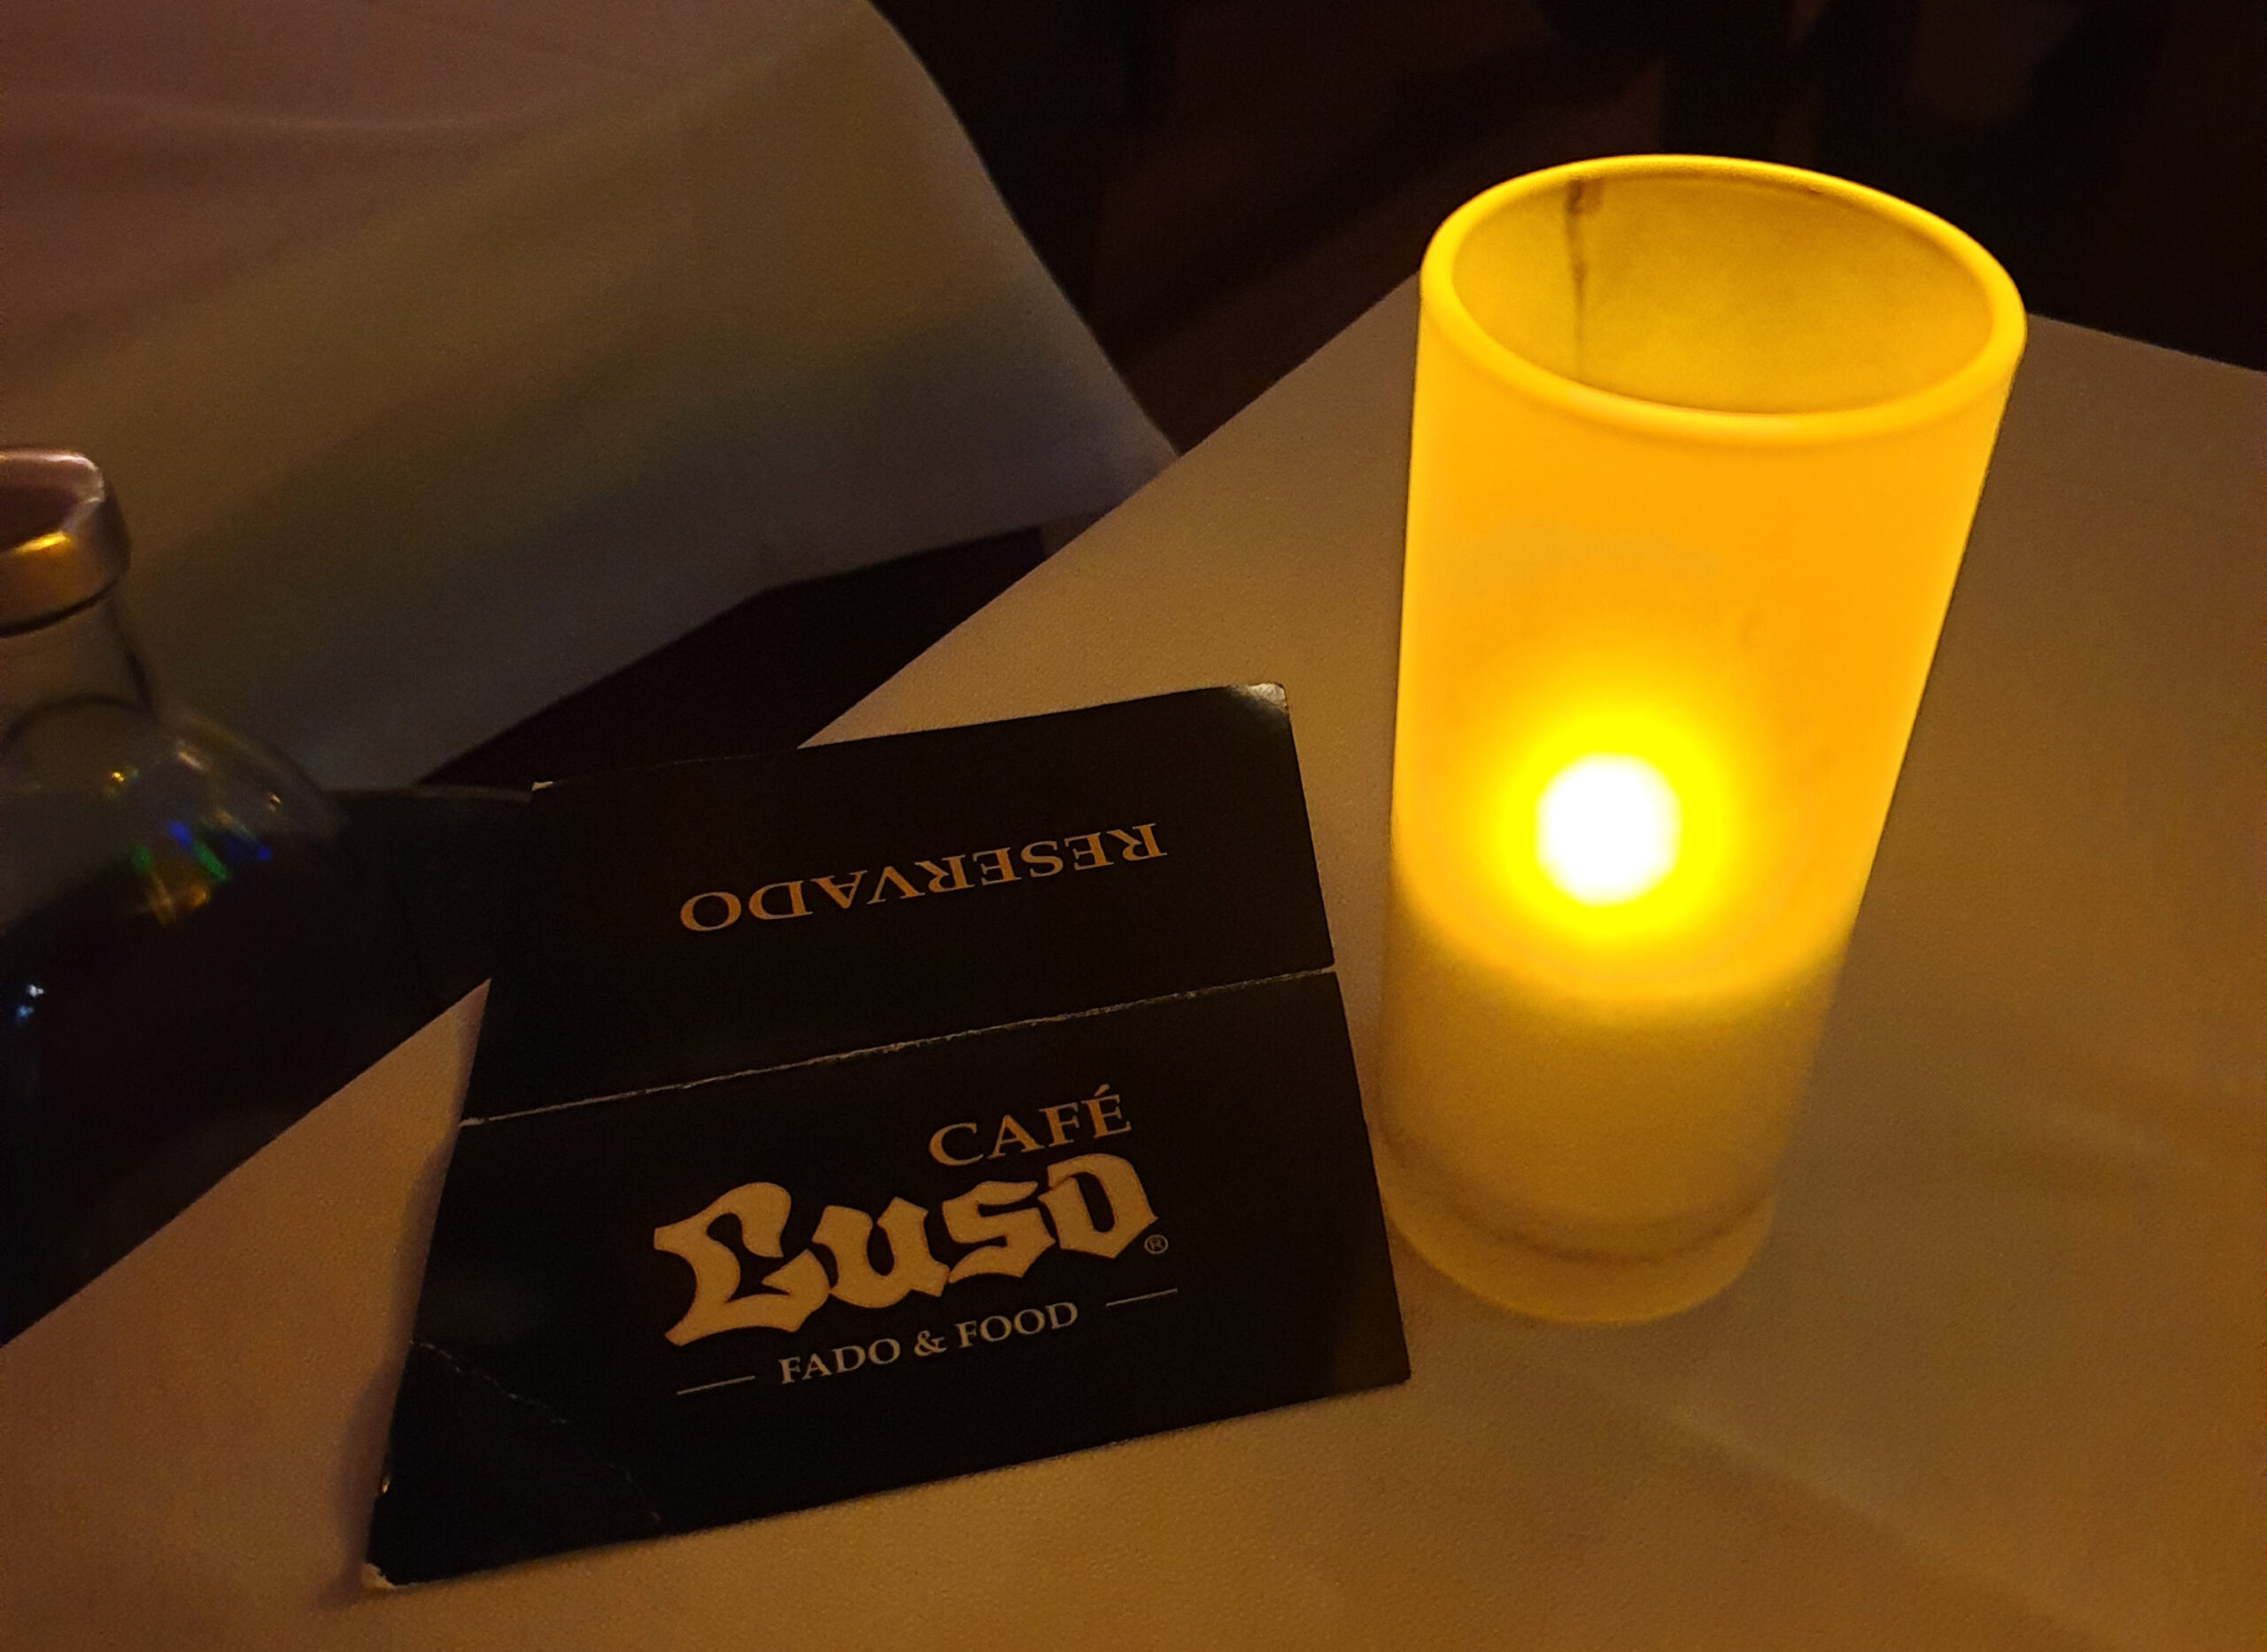 In foto si vede una candela accesa su una tovaglia bianca ed un cartoncino con scritto cafe Luso, il nome del ristorante